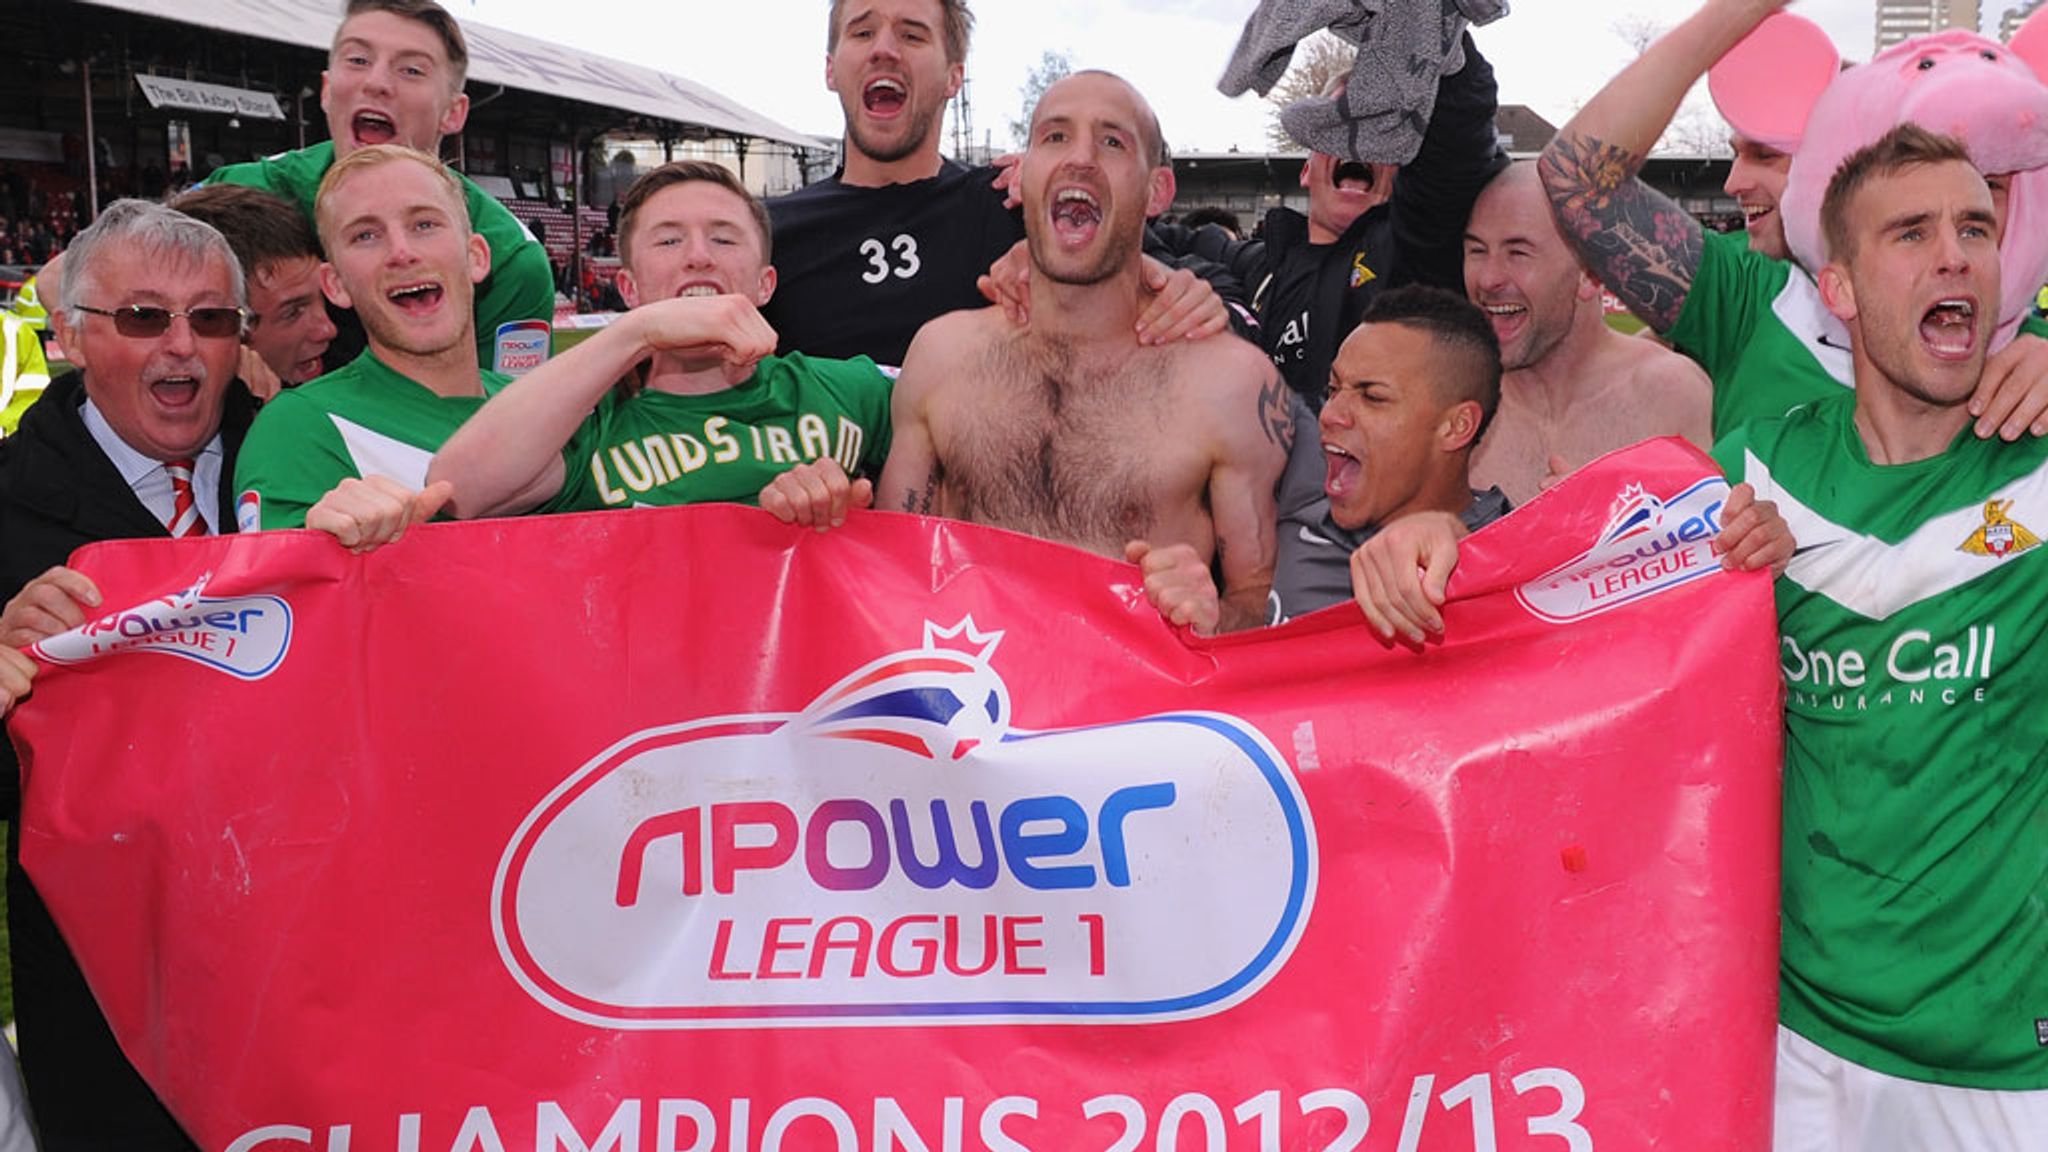 2012/13 npower Championship - Wolverhampton Wanderers